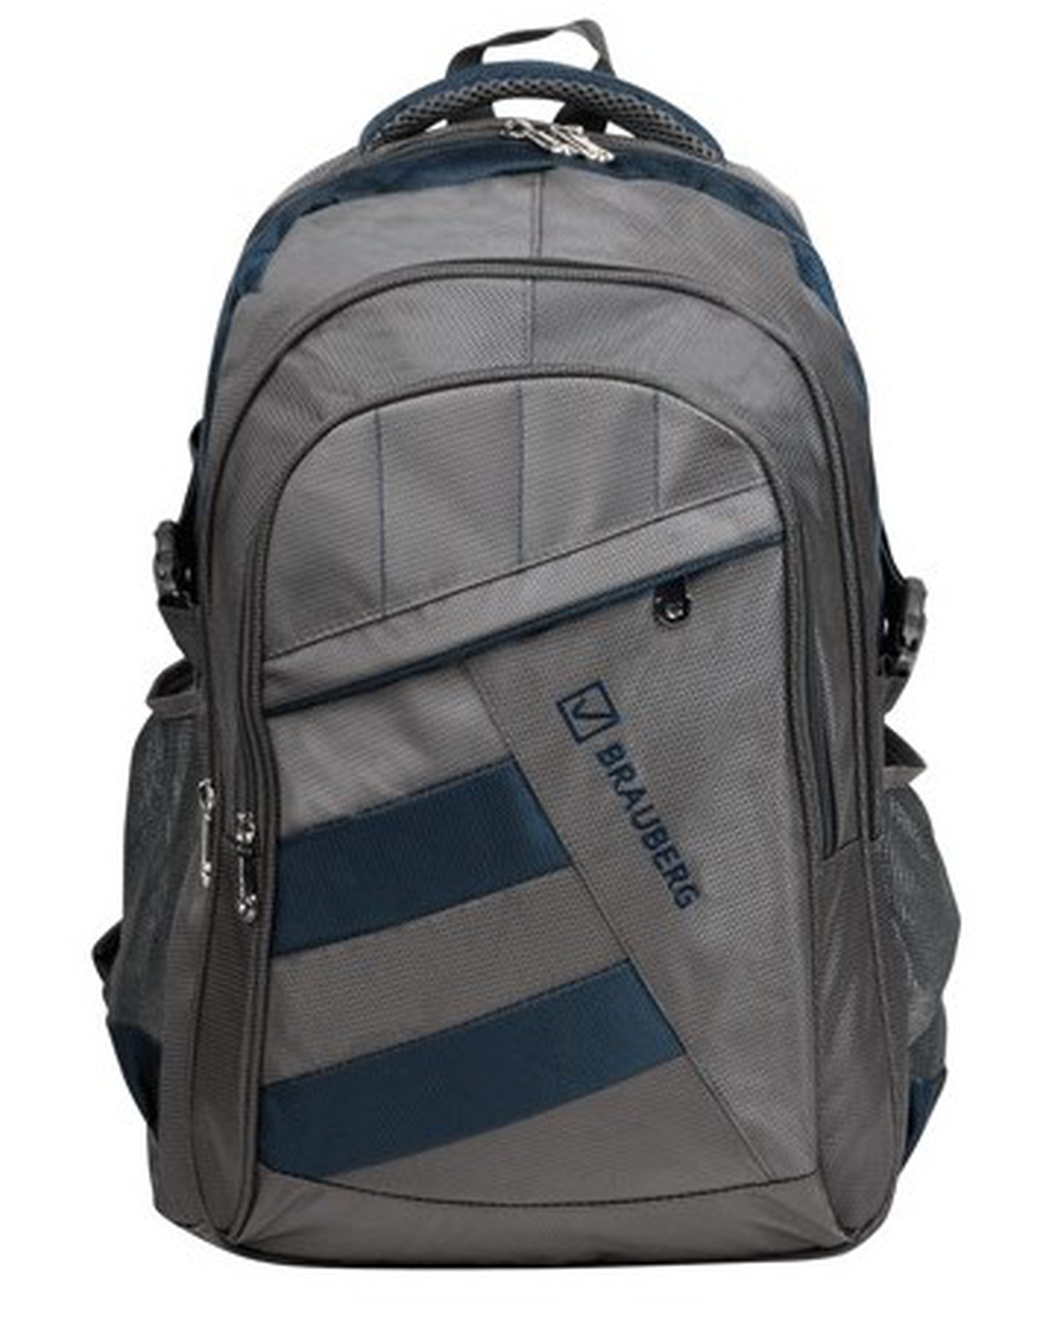 Рюкзак для школы и офиса Brauberg MainStream 2, 45*32*19см, 35 л, серо-синий фото